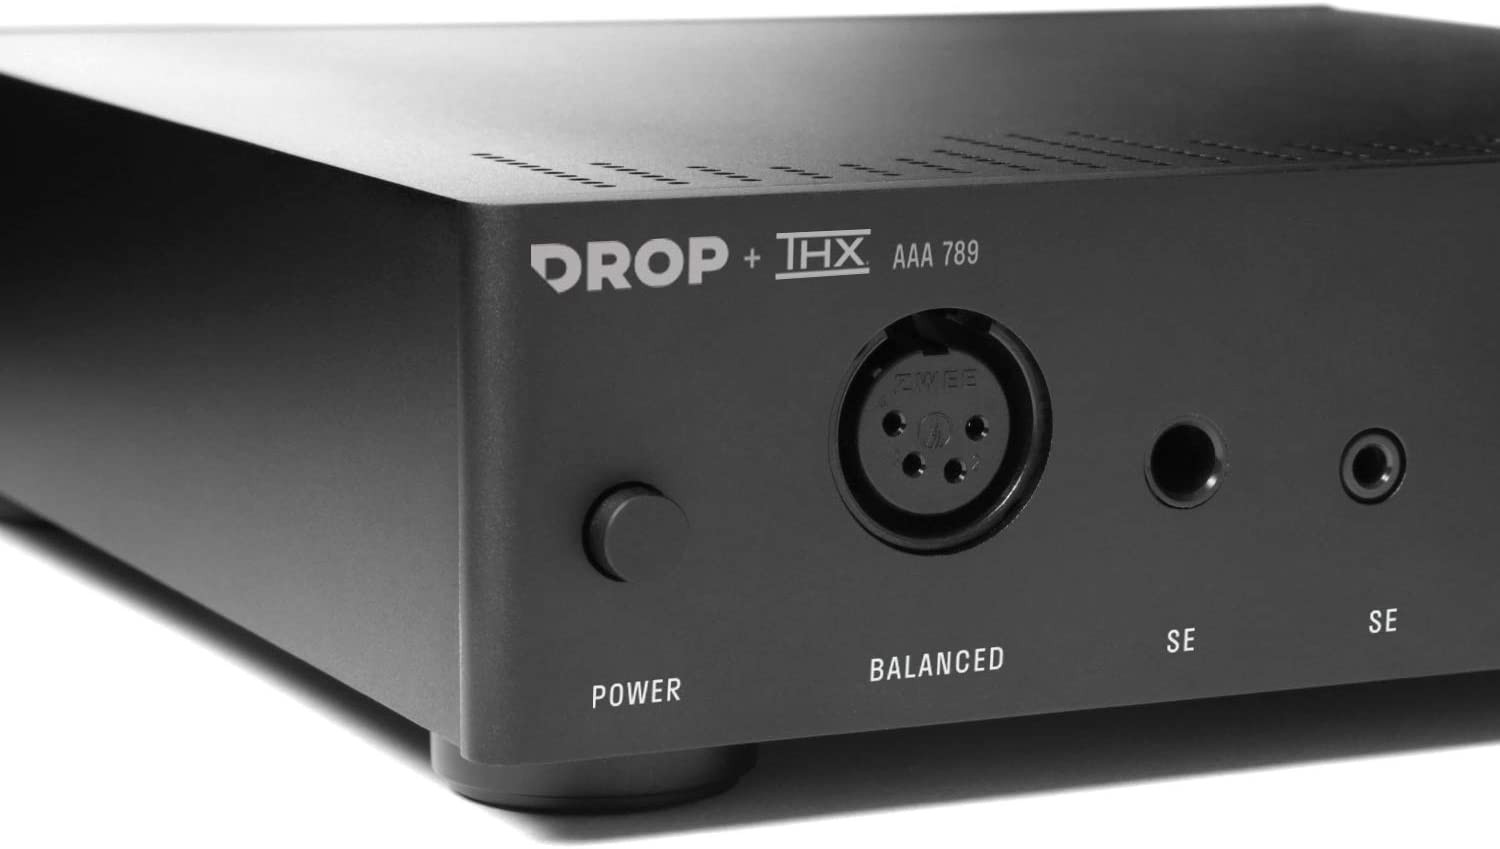 camaras y audio - Drop + THX AAA 789 Amplificador auriculares lineal / XLR balanceado entradas RCA